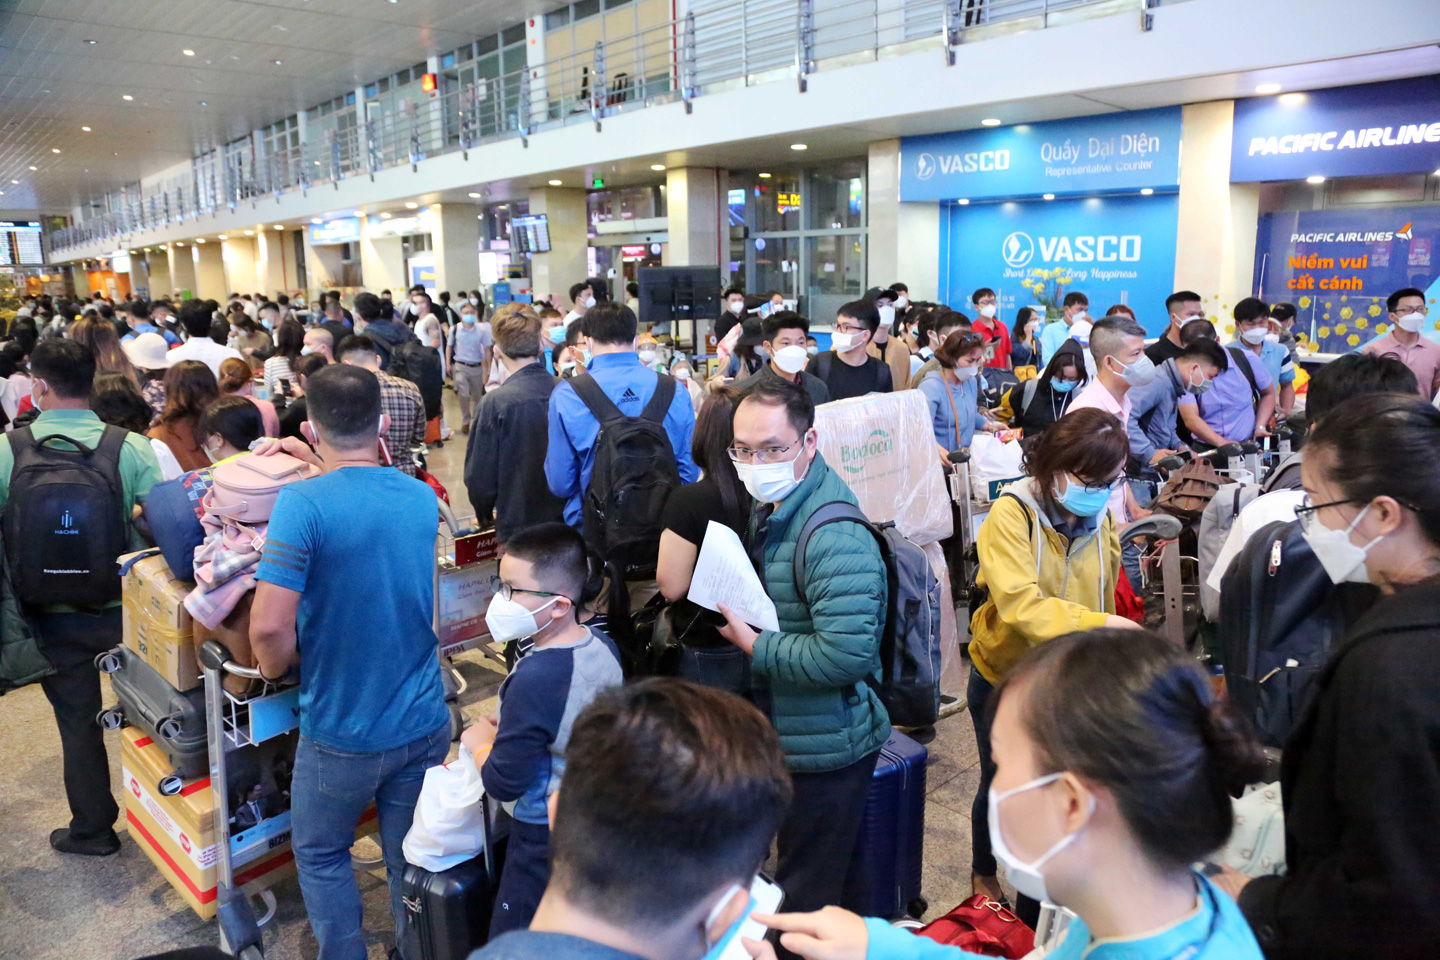 Ảnh: Sân bay Tân Sơn Nhất nghẹt người, khách nằm dài giữa nhà ga cả đêm chờ chuyến bay - 4